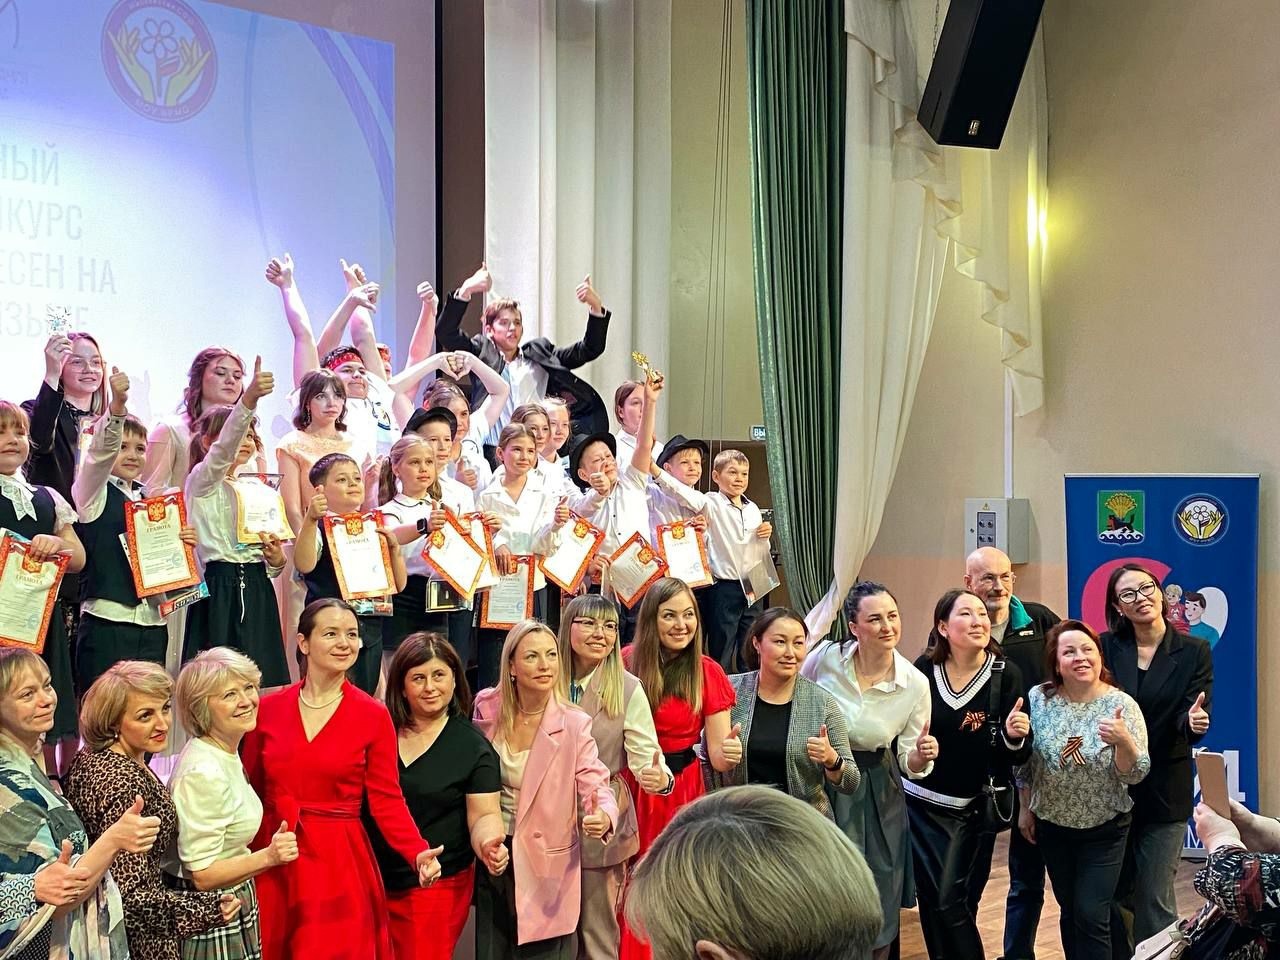 Миллер Алиса, 4б и Щукина Полина, 11а приняли участие в районном фестивале-конкурсе на английском языке «Музыкальная битва», который состоялся в Марковской школе.